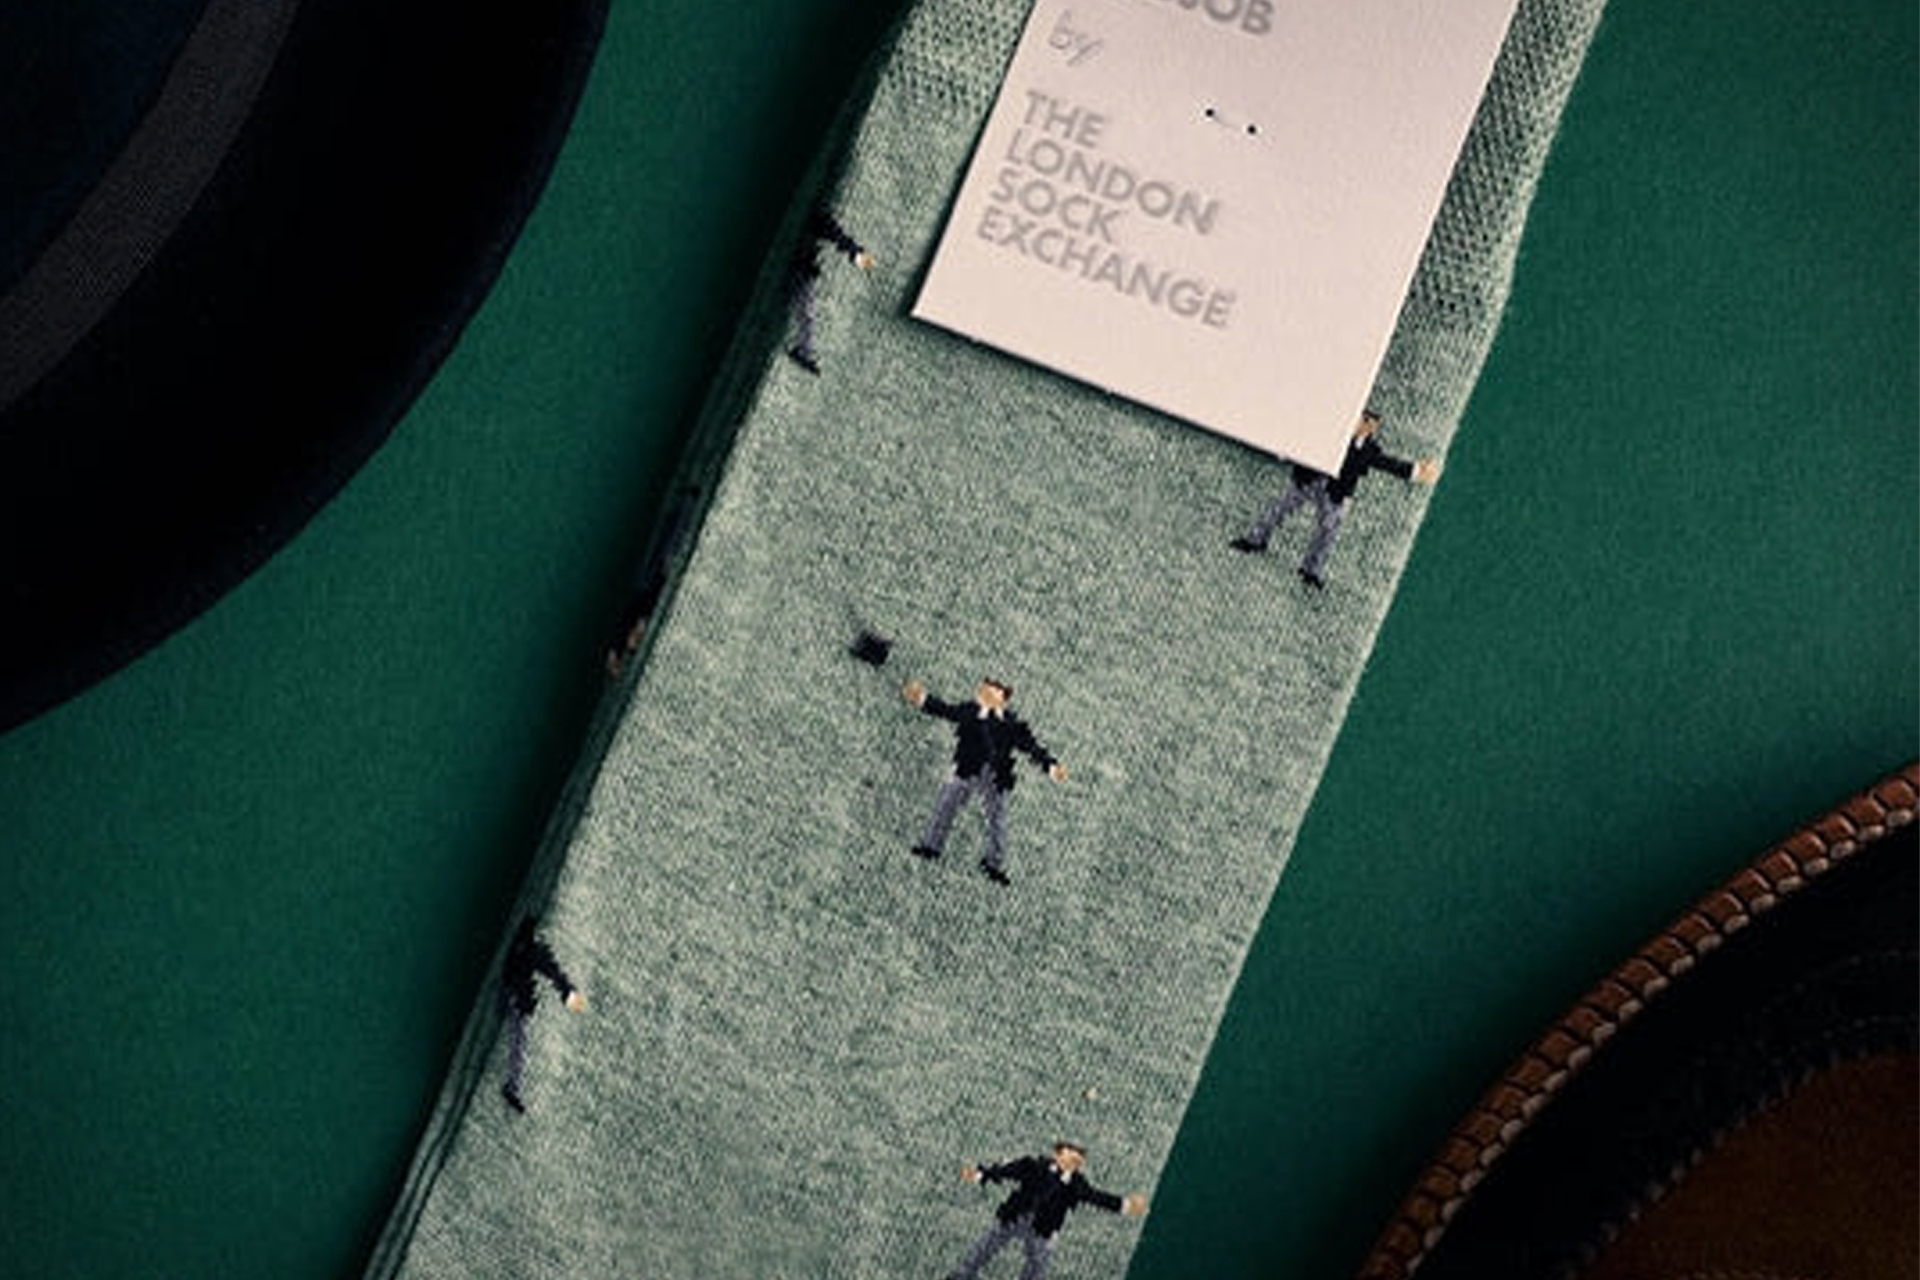 007第一版袜子系列，以詹姆斯·邦德的形象为特色